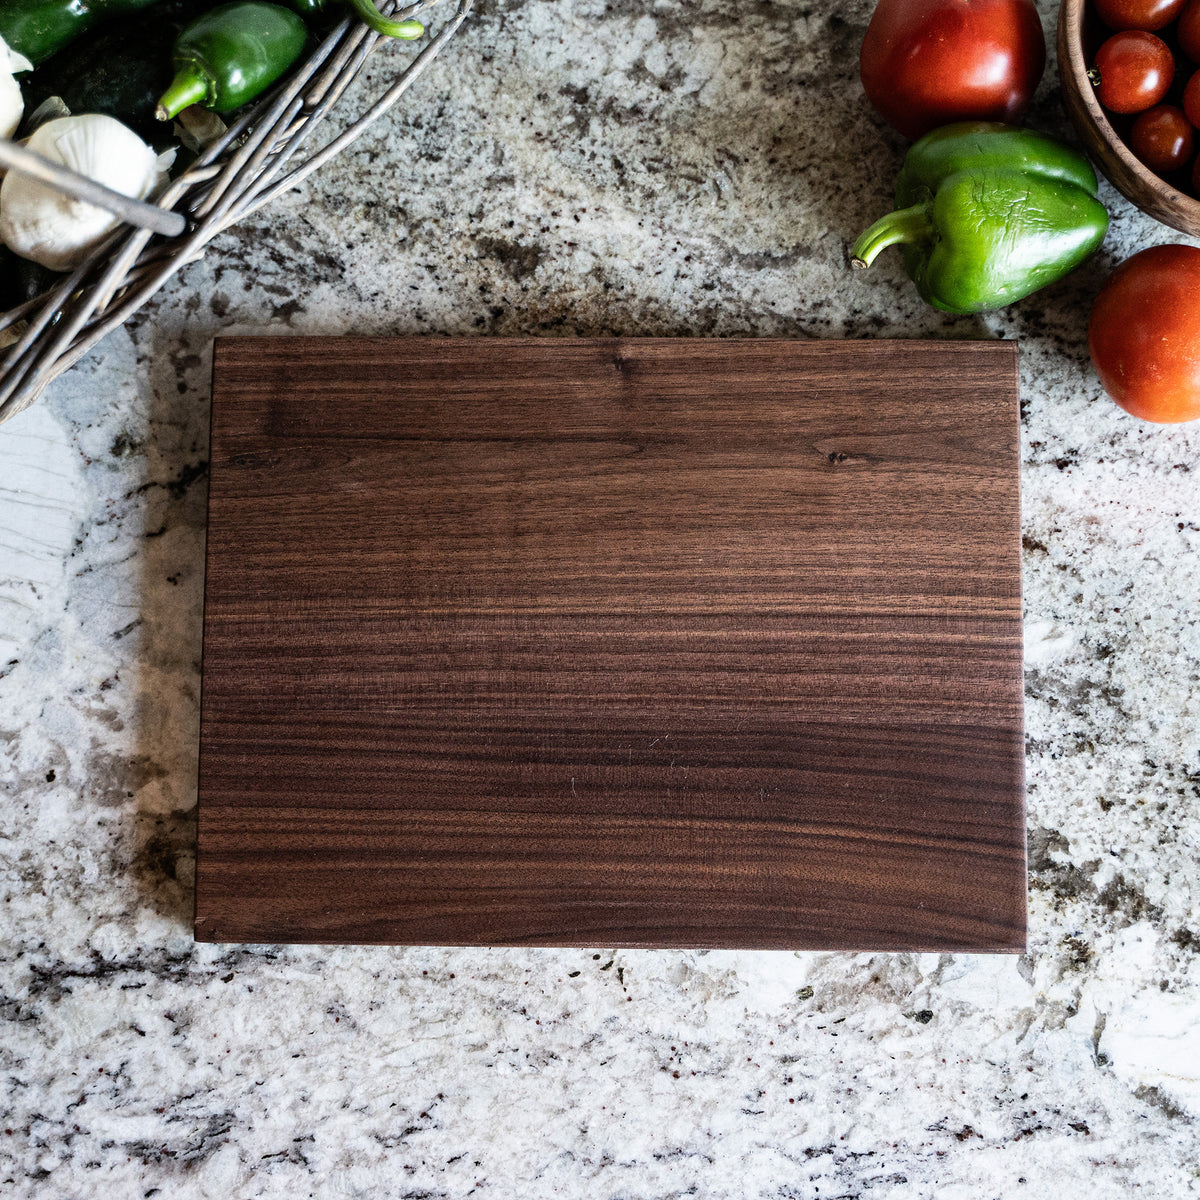 American Walnut Wood Cutting Board